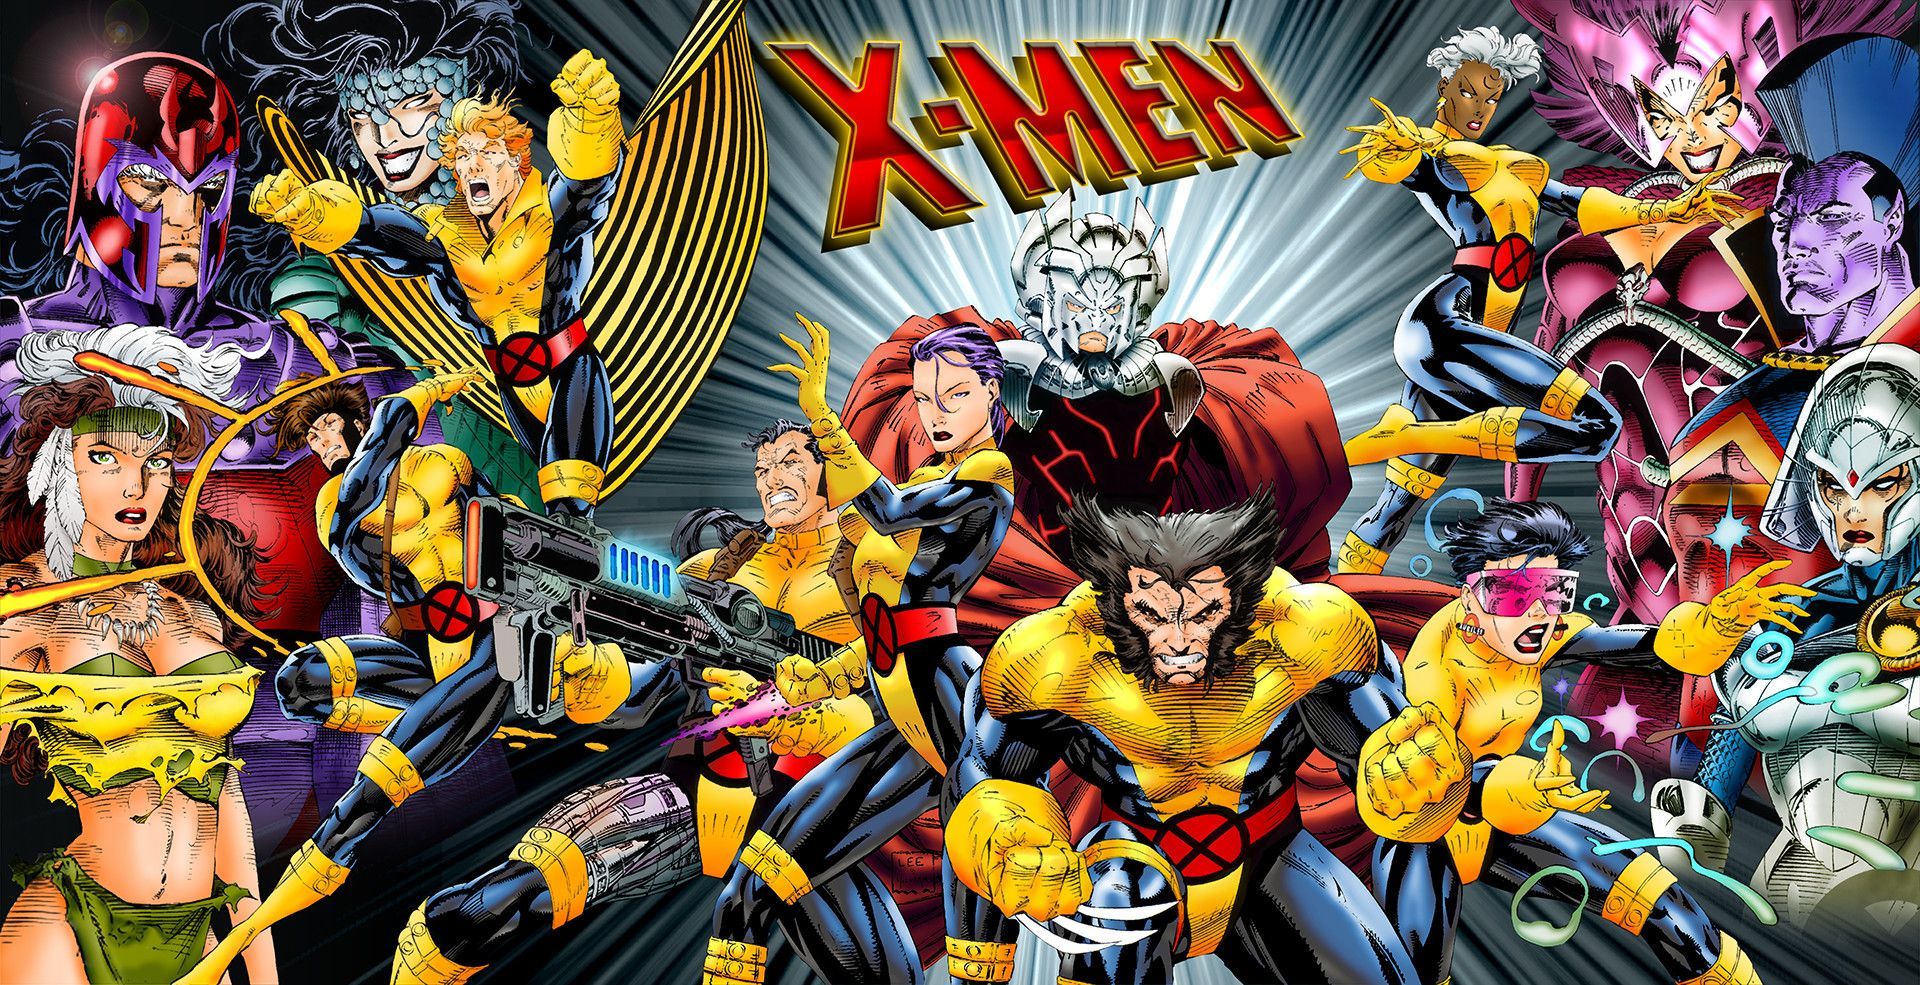 Marvel X Men Wallpaper Free Marvel X Men Background